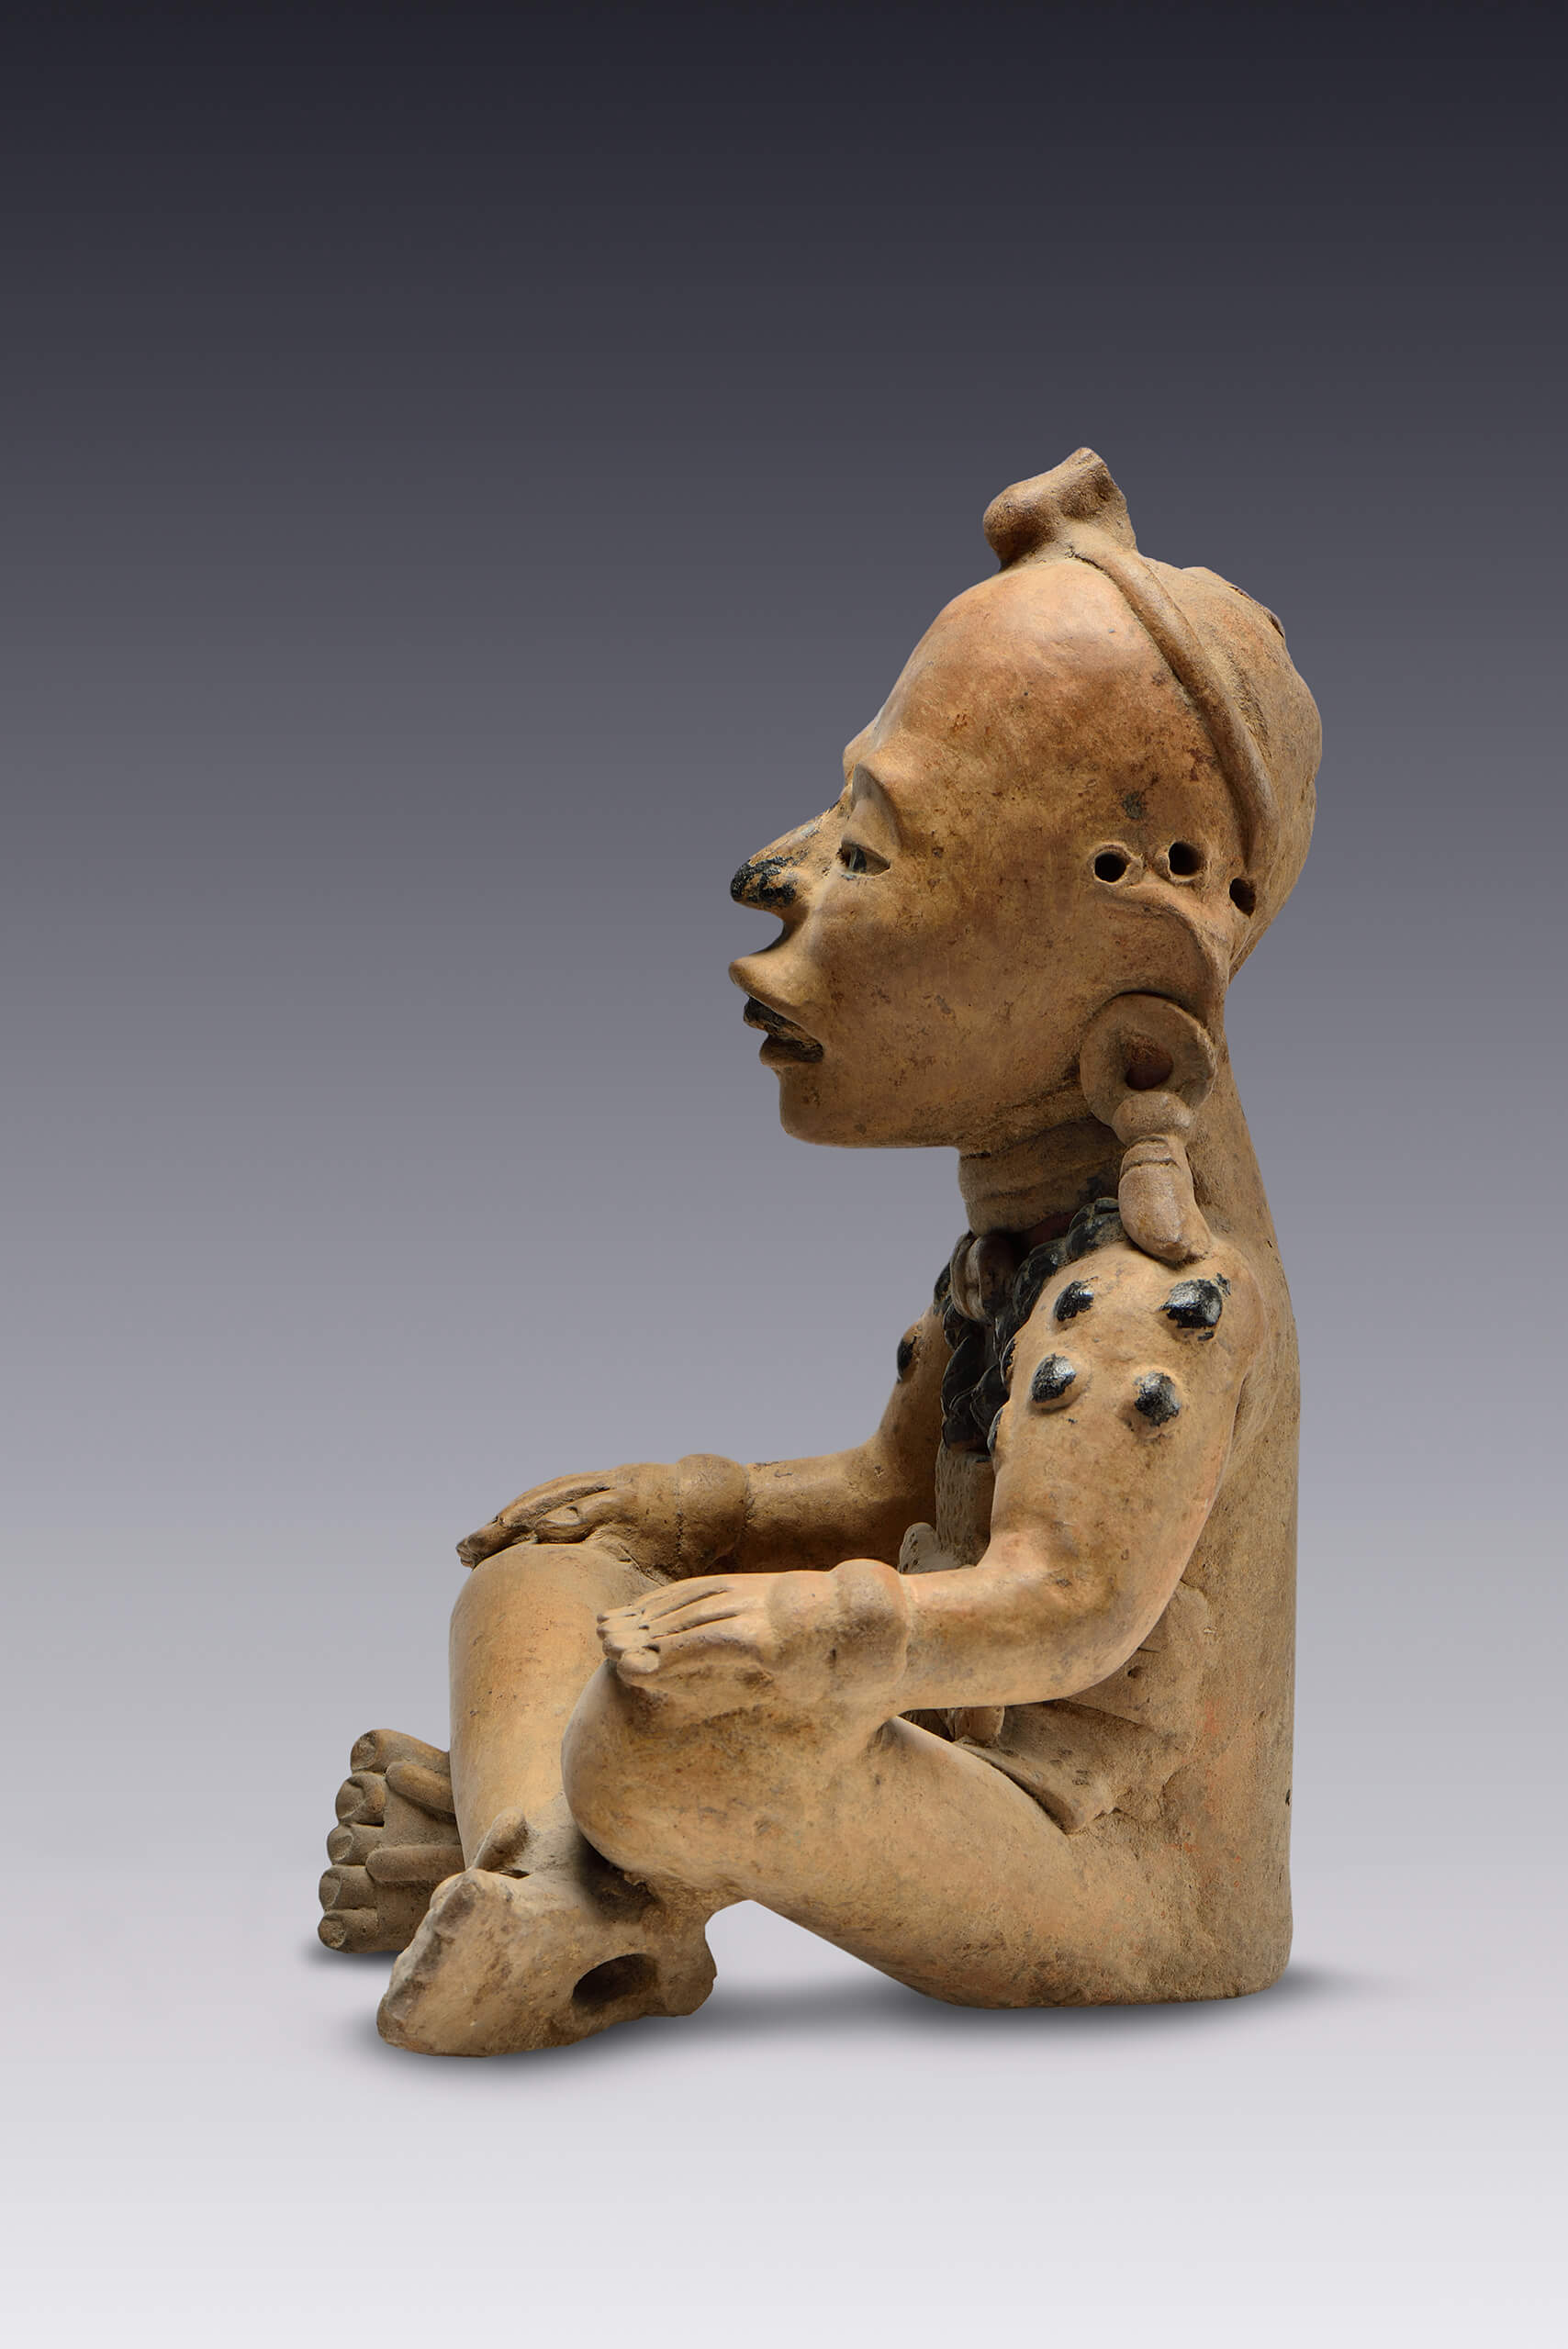 Figurilla antropomorfa sedente que representa a un personaje de elite | El tiempo en las cosas. Salas de Arte Contemporáneo | Museo Amparo, Puebla